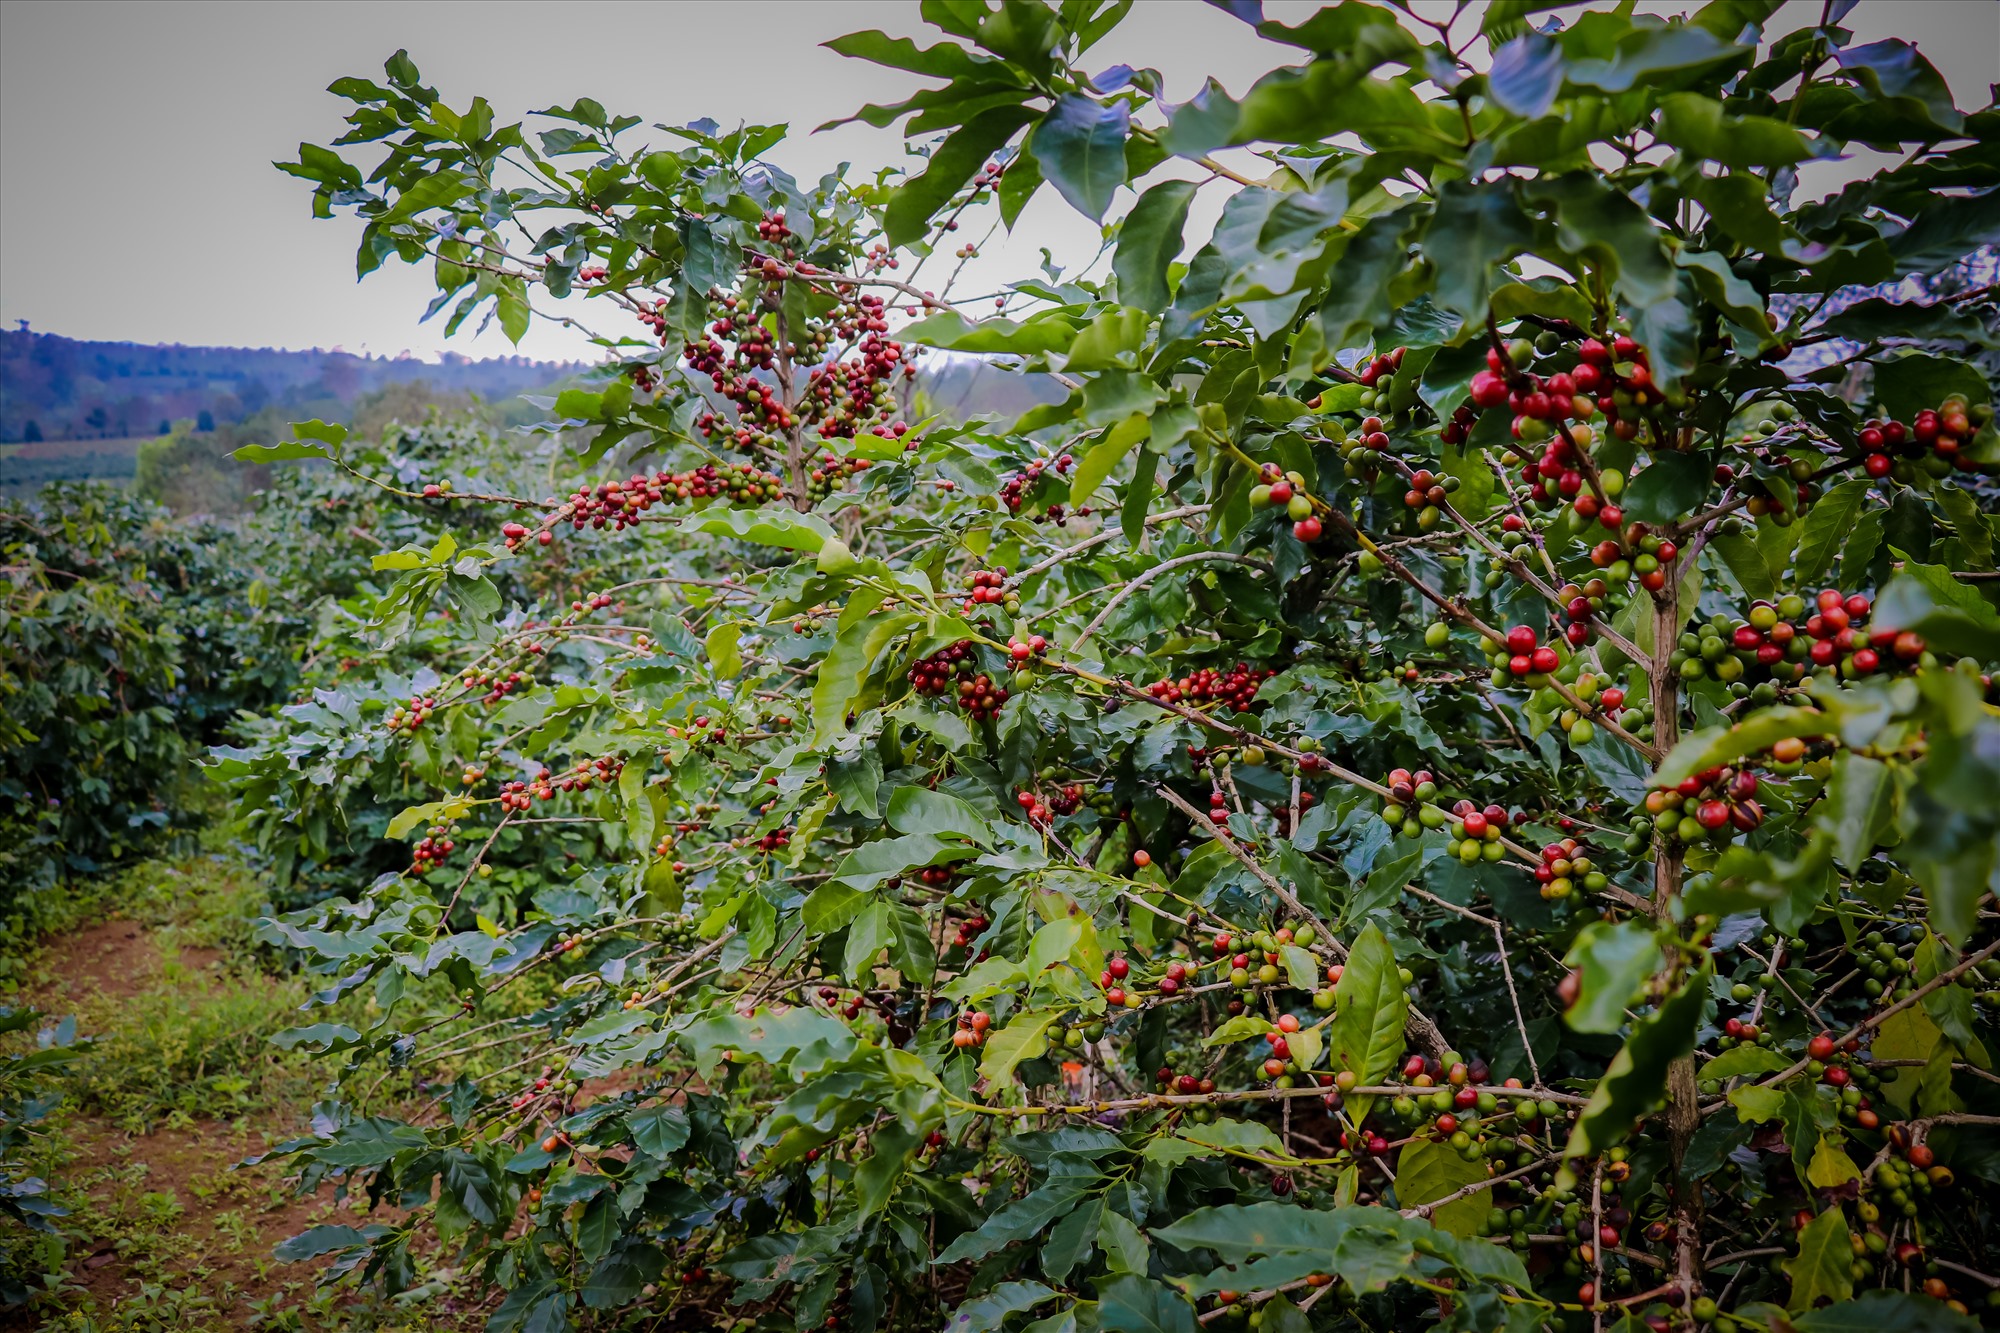 Thời điểm này là thời điểm thu hoạch cao điểm nhất trong mùa cà phê năm nay tại Hướng Hóa.